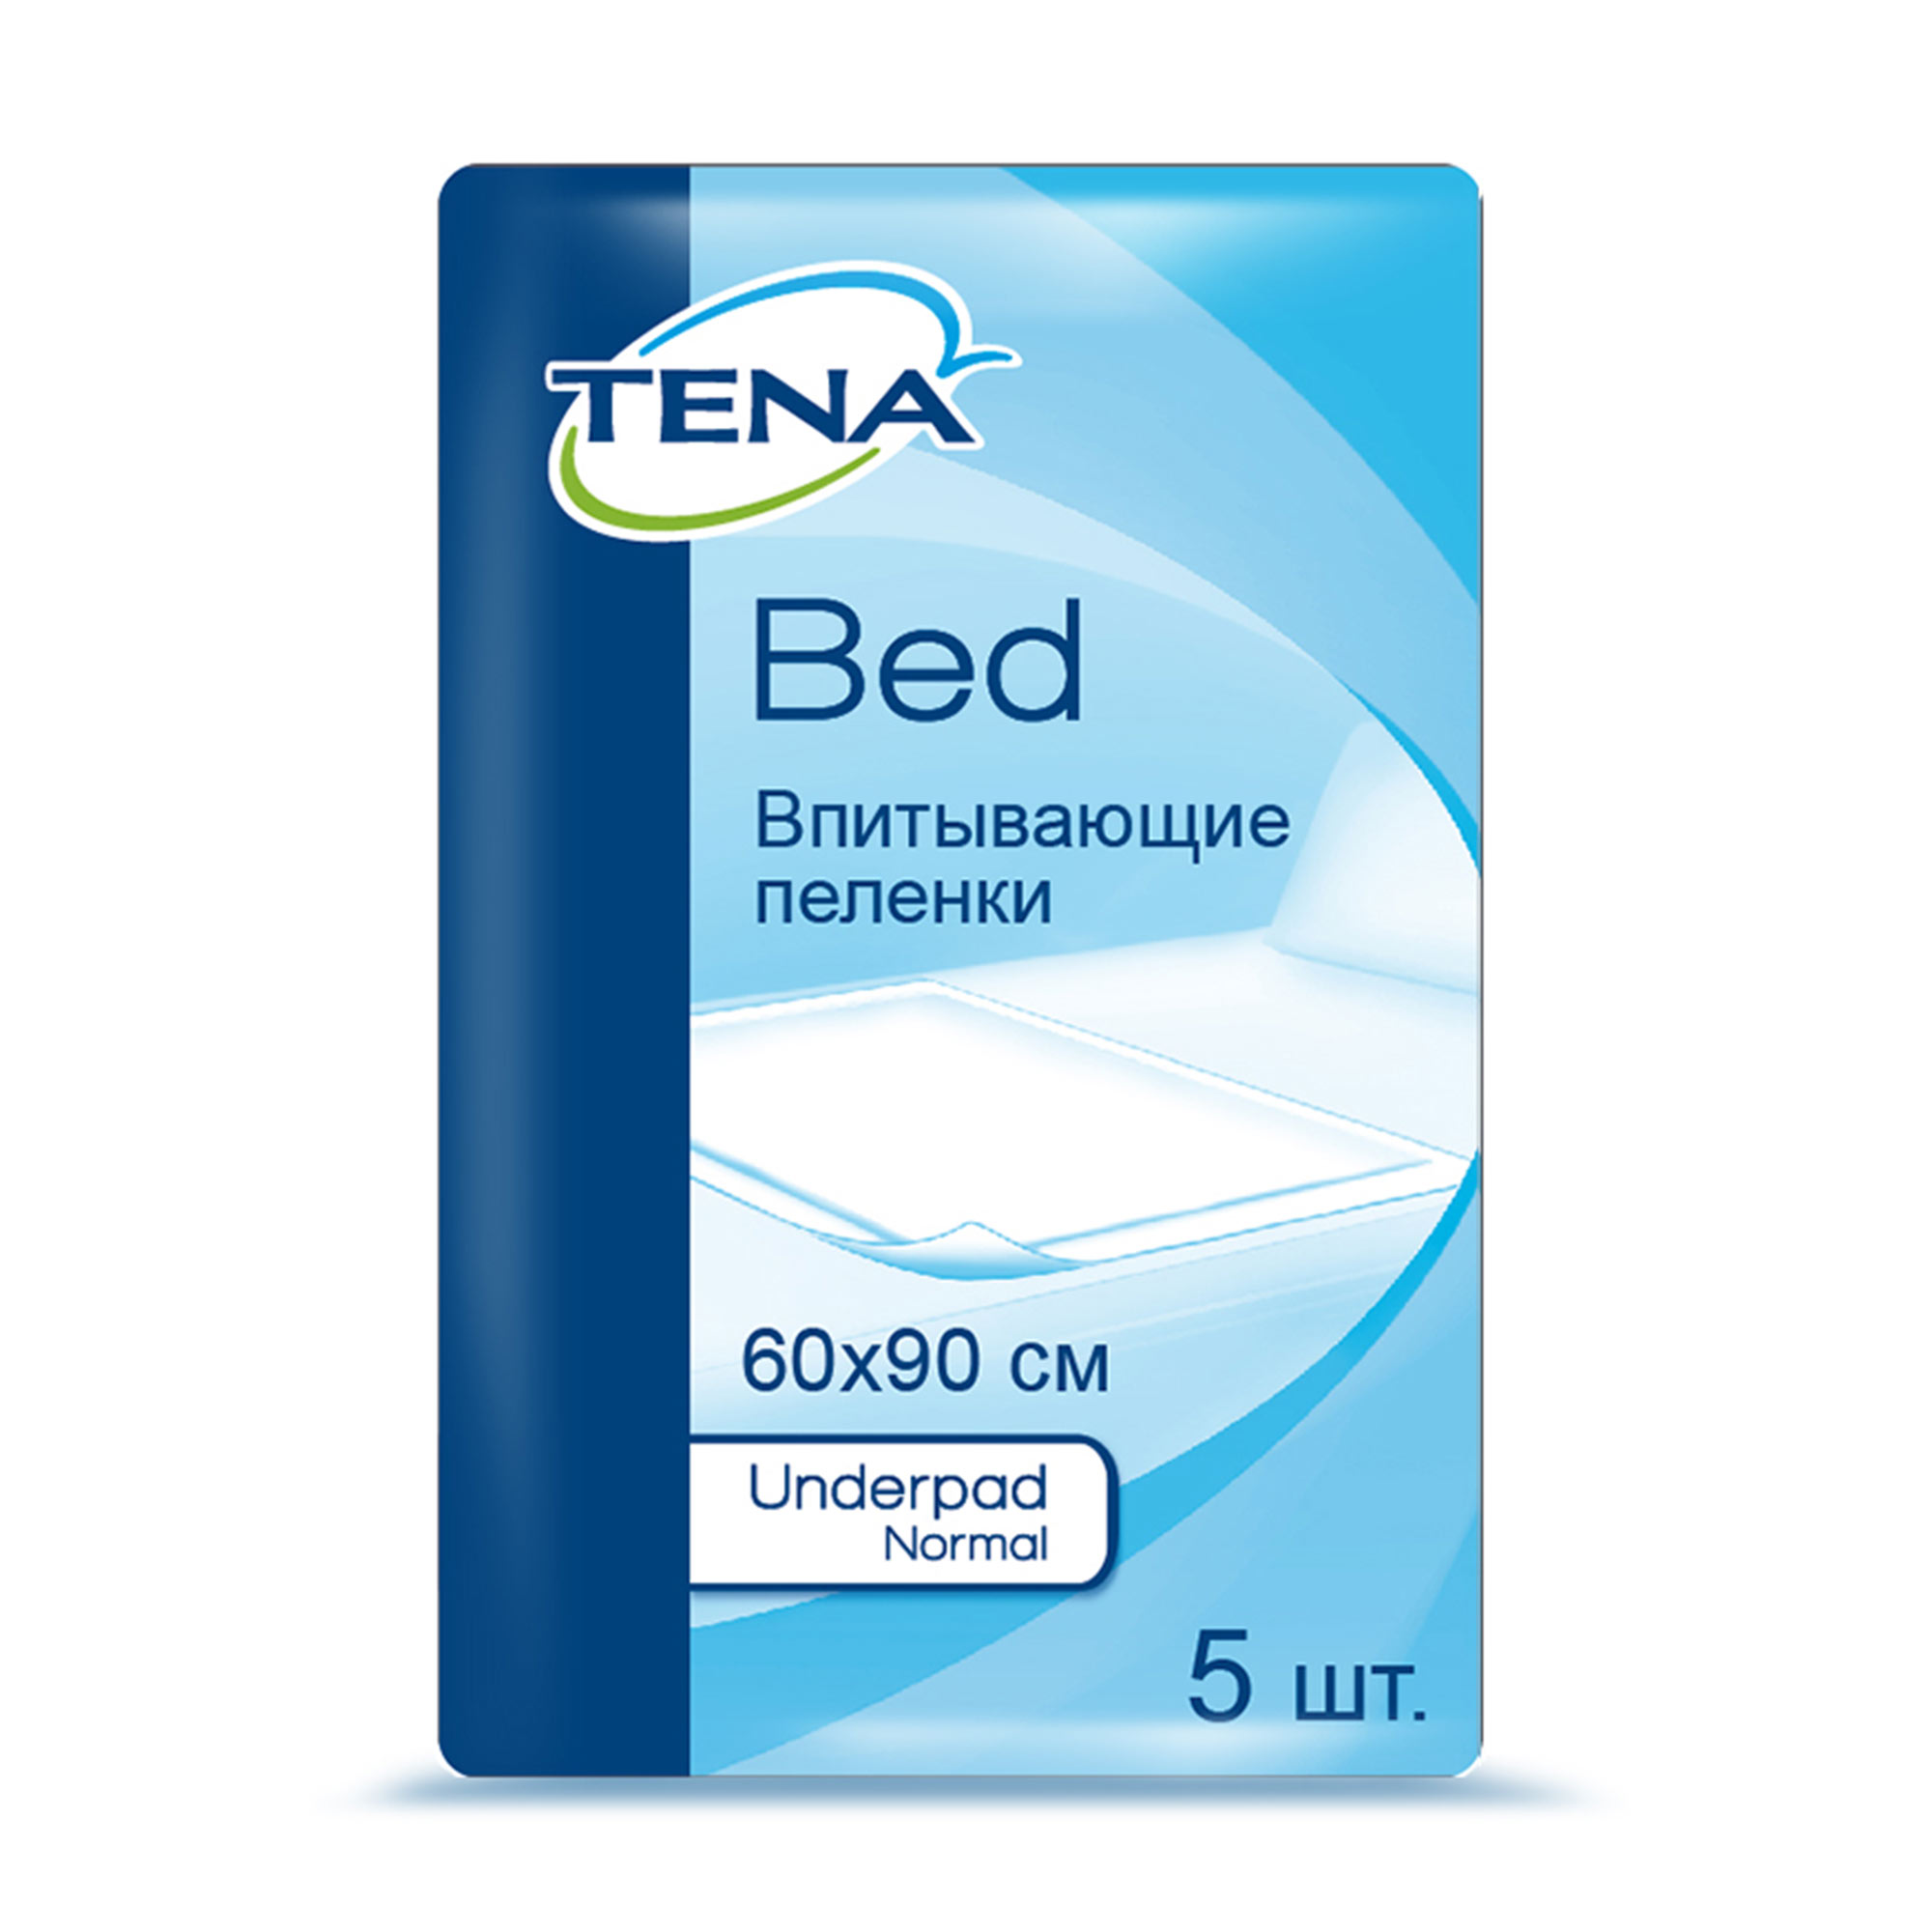 ТЕНА Бед Андерпад Нормал (TENA Bed Normal ) 60x90 cm, Простыни, 5 шт.